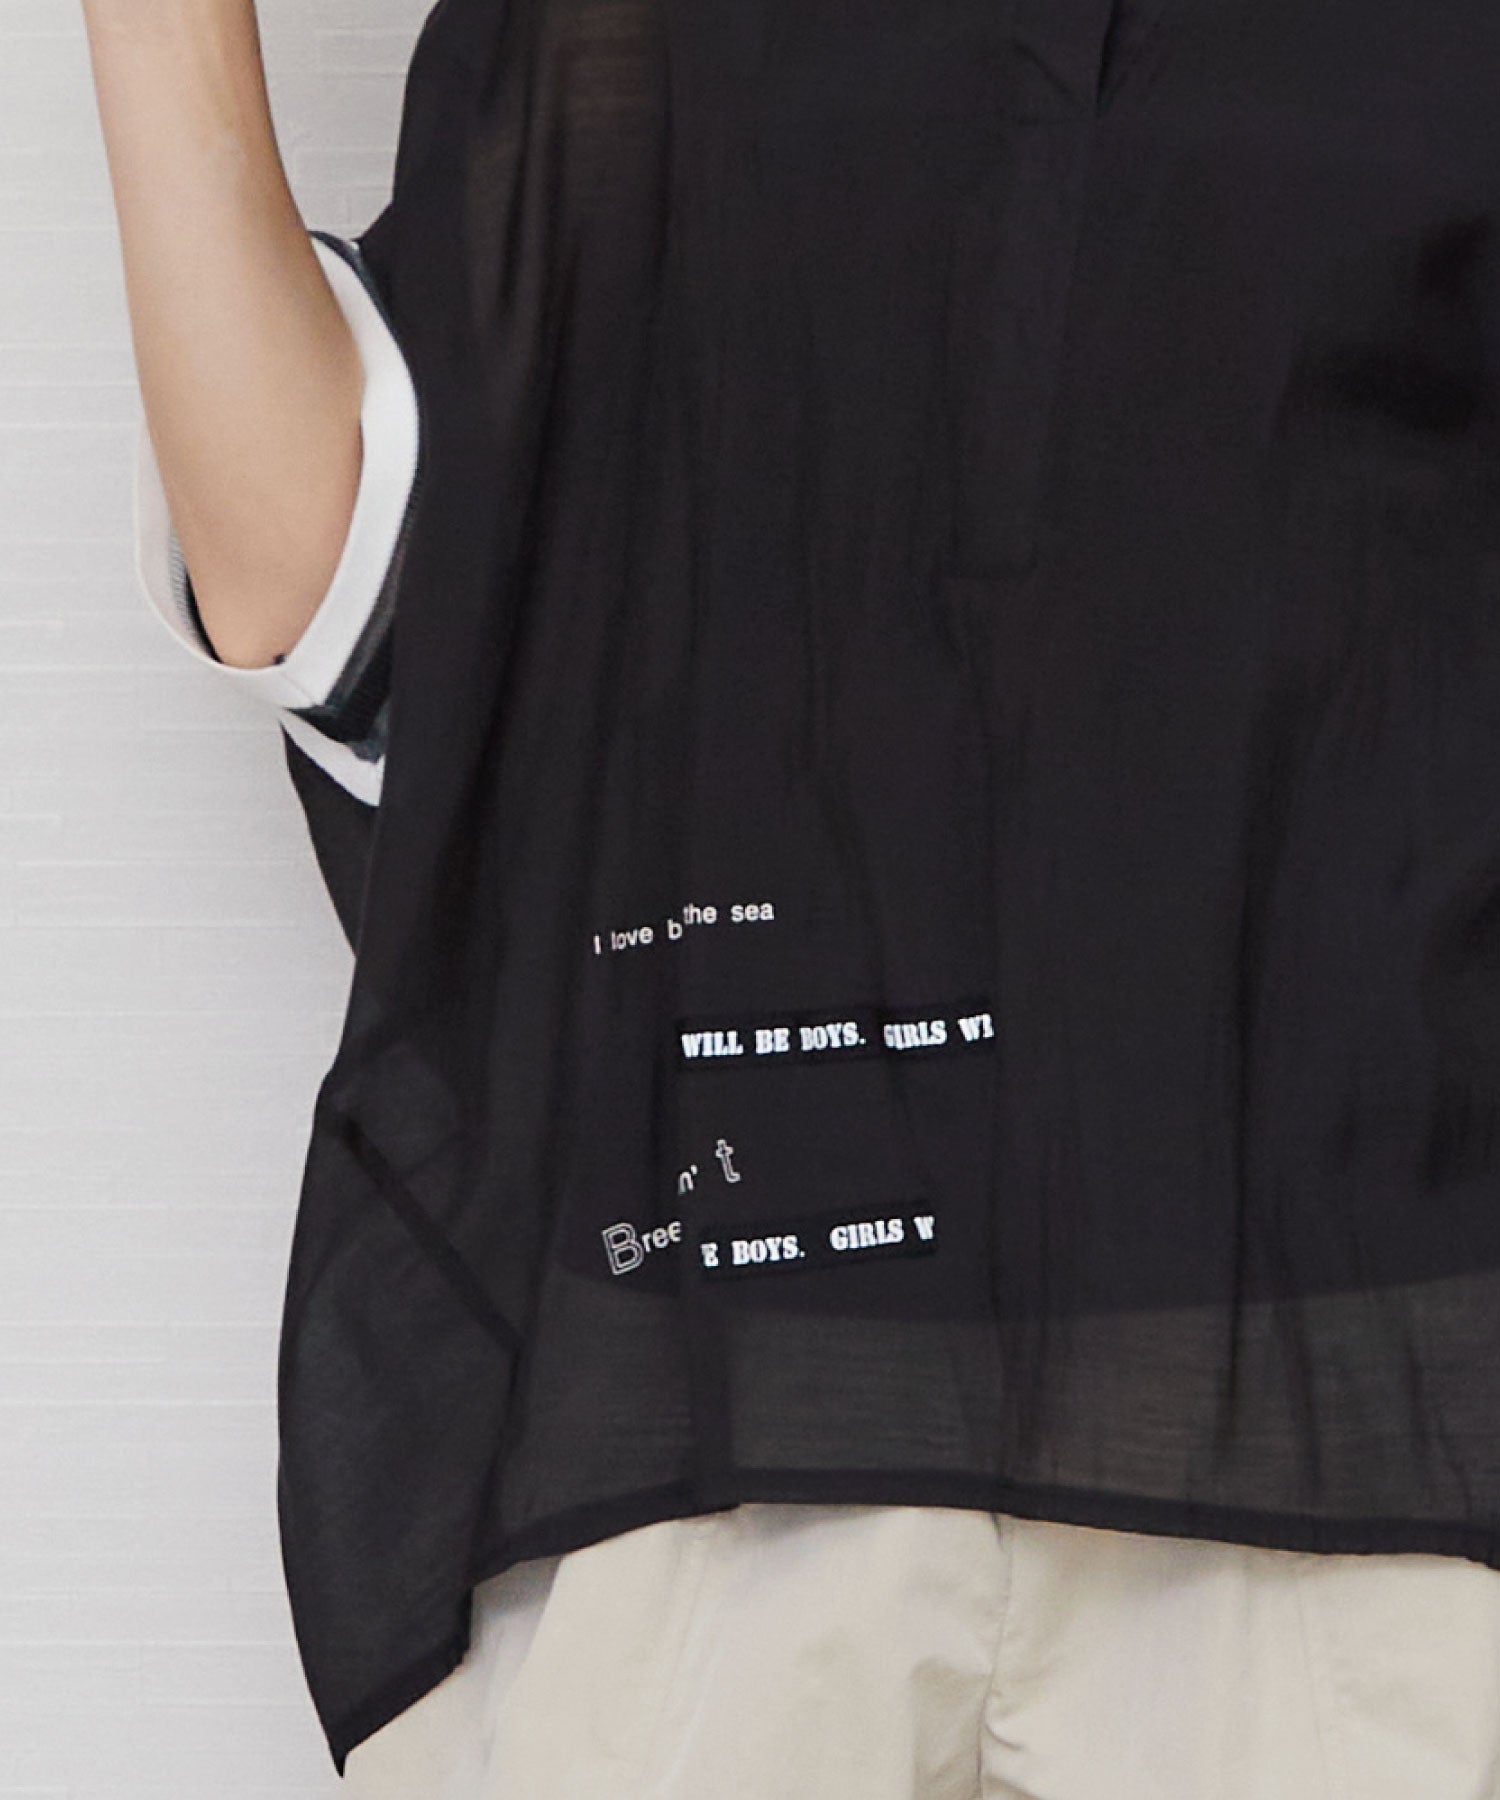 【FONT LAB】メッセージワイドドルマン シアーシャツ | JETSET SOLO PLUS(ジェットセットソロプラス) 公式通販 | インポート レディース ファッション きれいめカジュアル